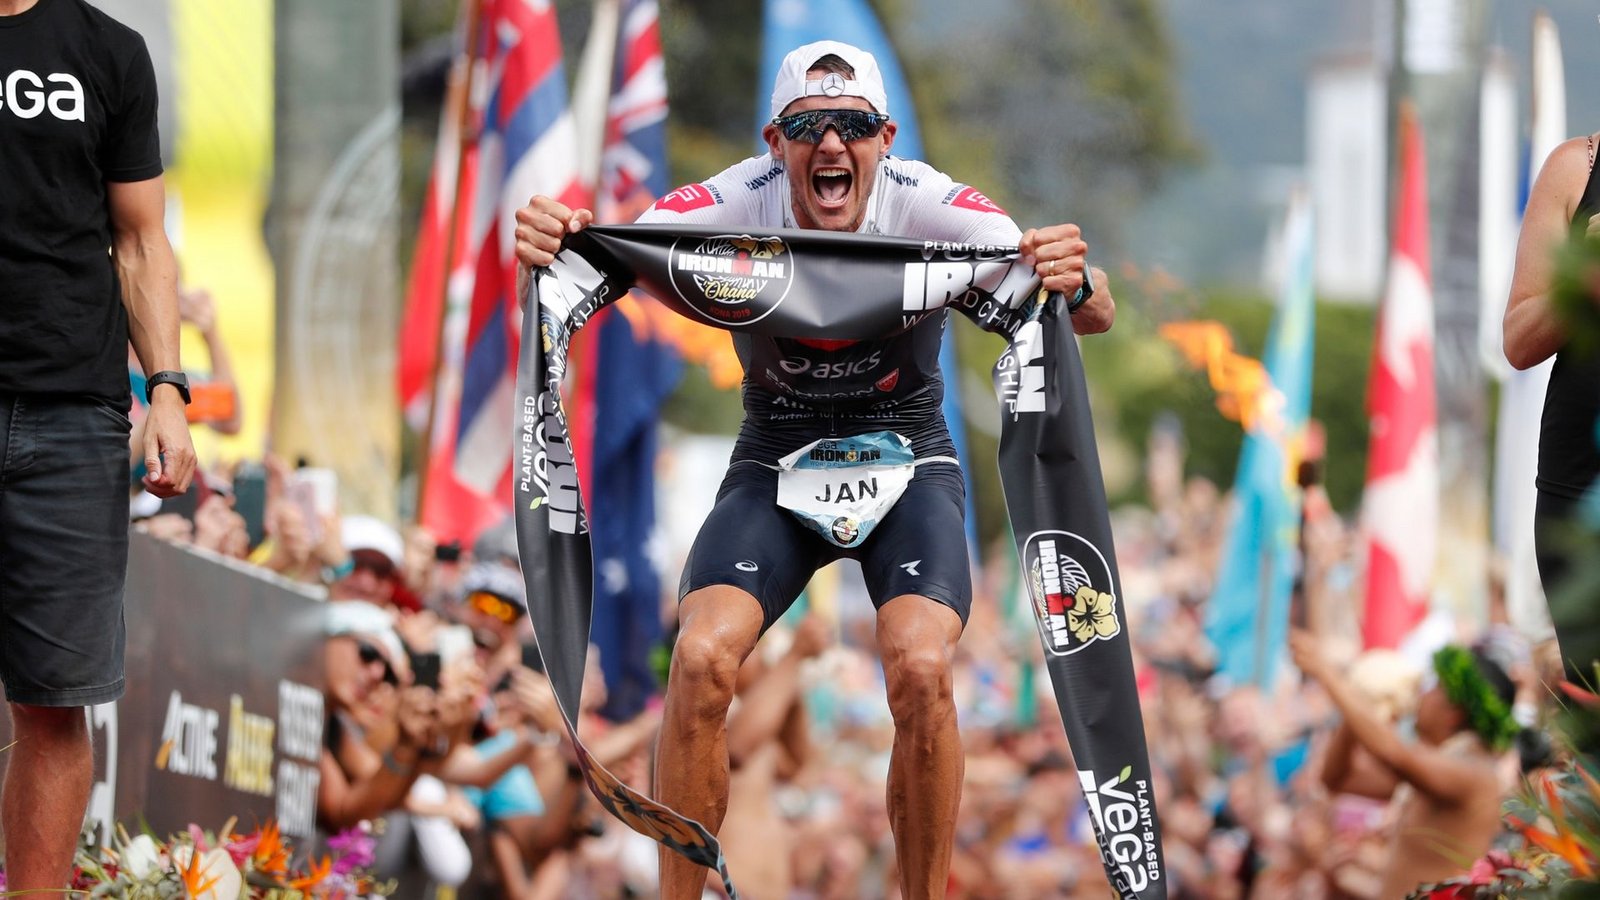 Triathlon-Superstar Jan Frodeno wird in Utah nicht am Start sein.Foto: Marco Garcia/AP/dpa